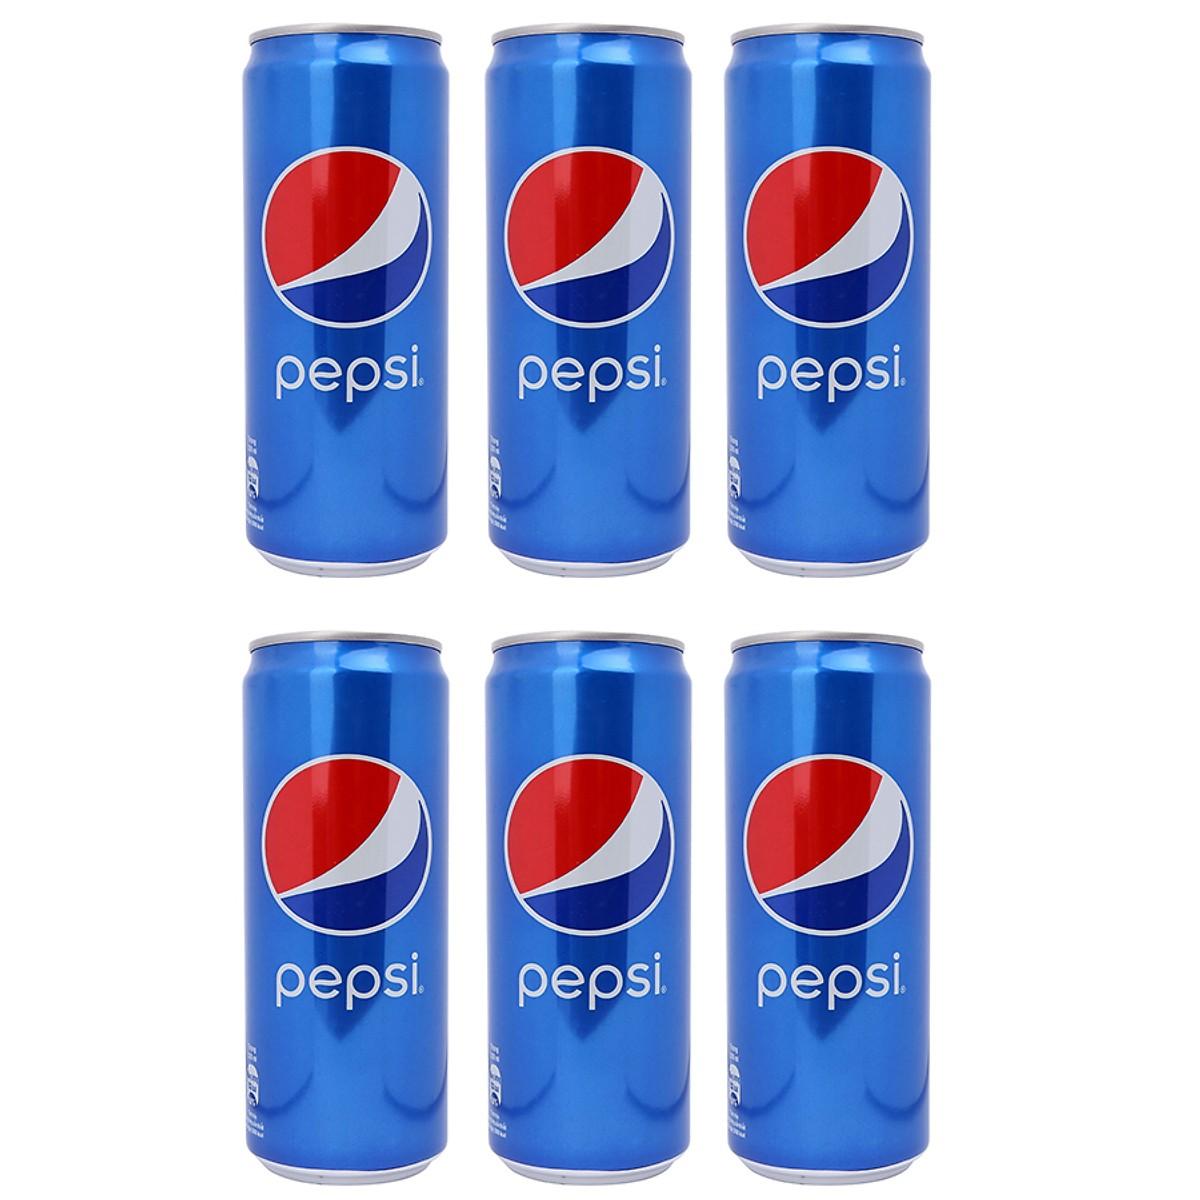 Nước giải khát Pepsi - Thùng 6 lon x 320ml